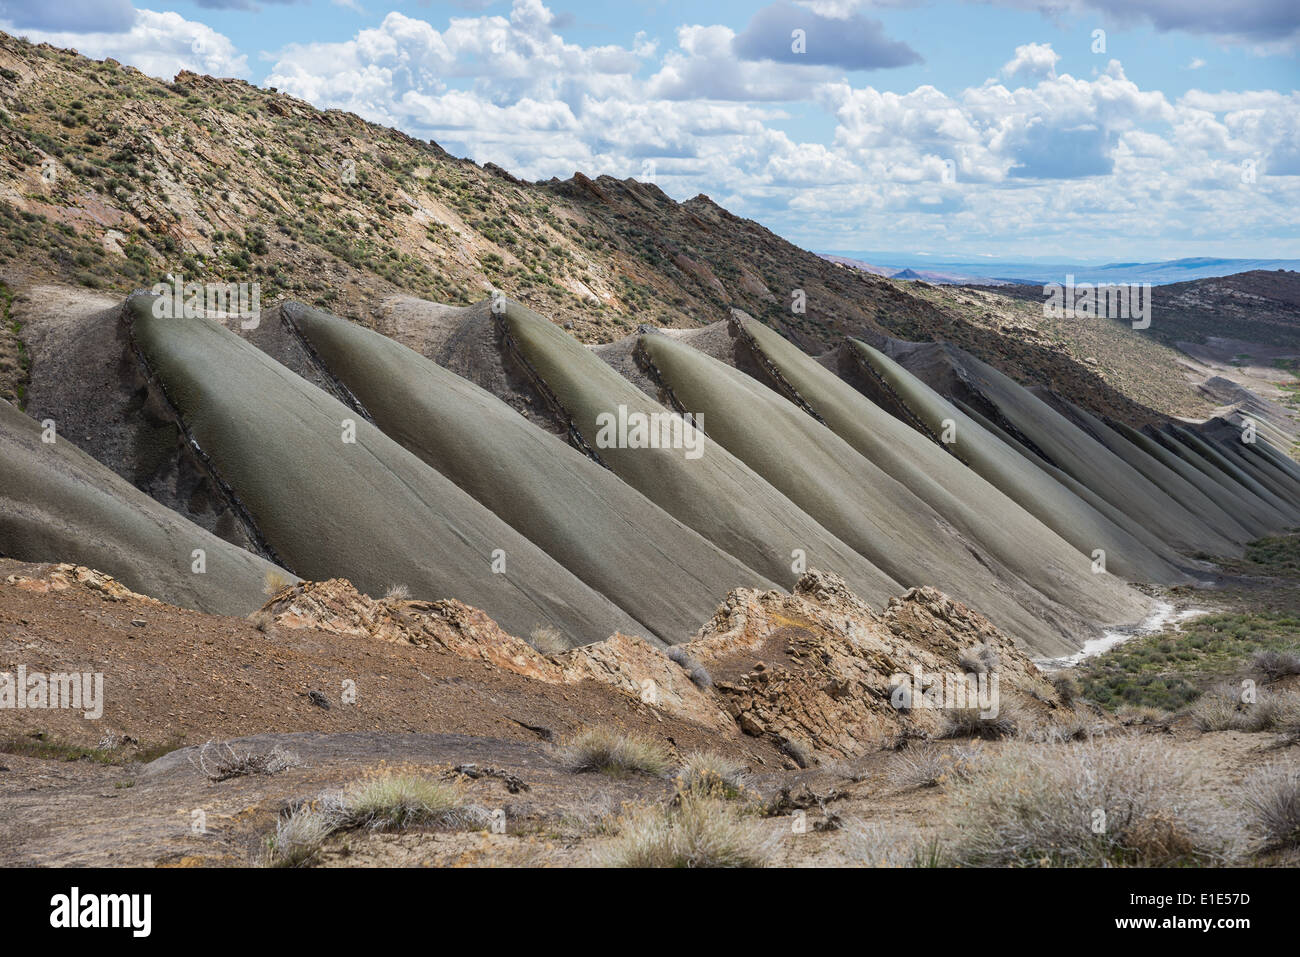 Eine graue Sandsteinformation wurde durch Wasser, interessantes Muster zu bilden erodiert. Wyoming, USA. Stockfoto